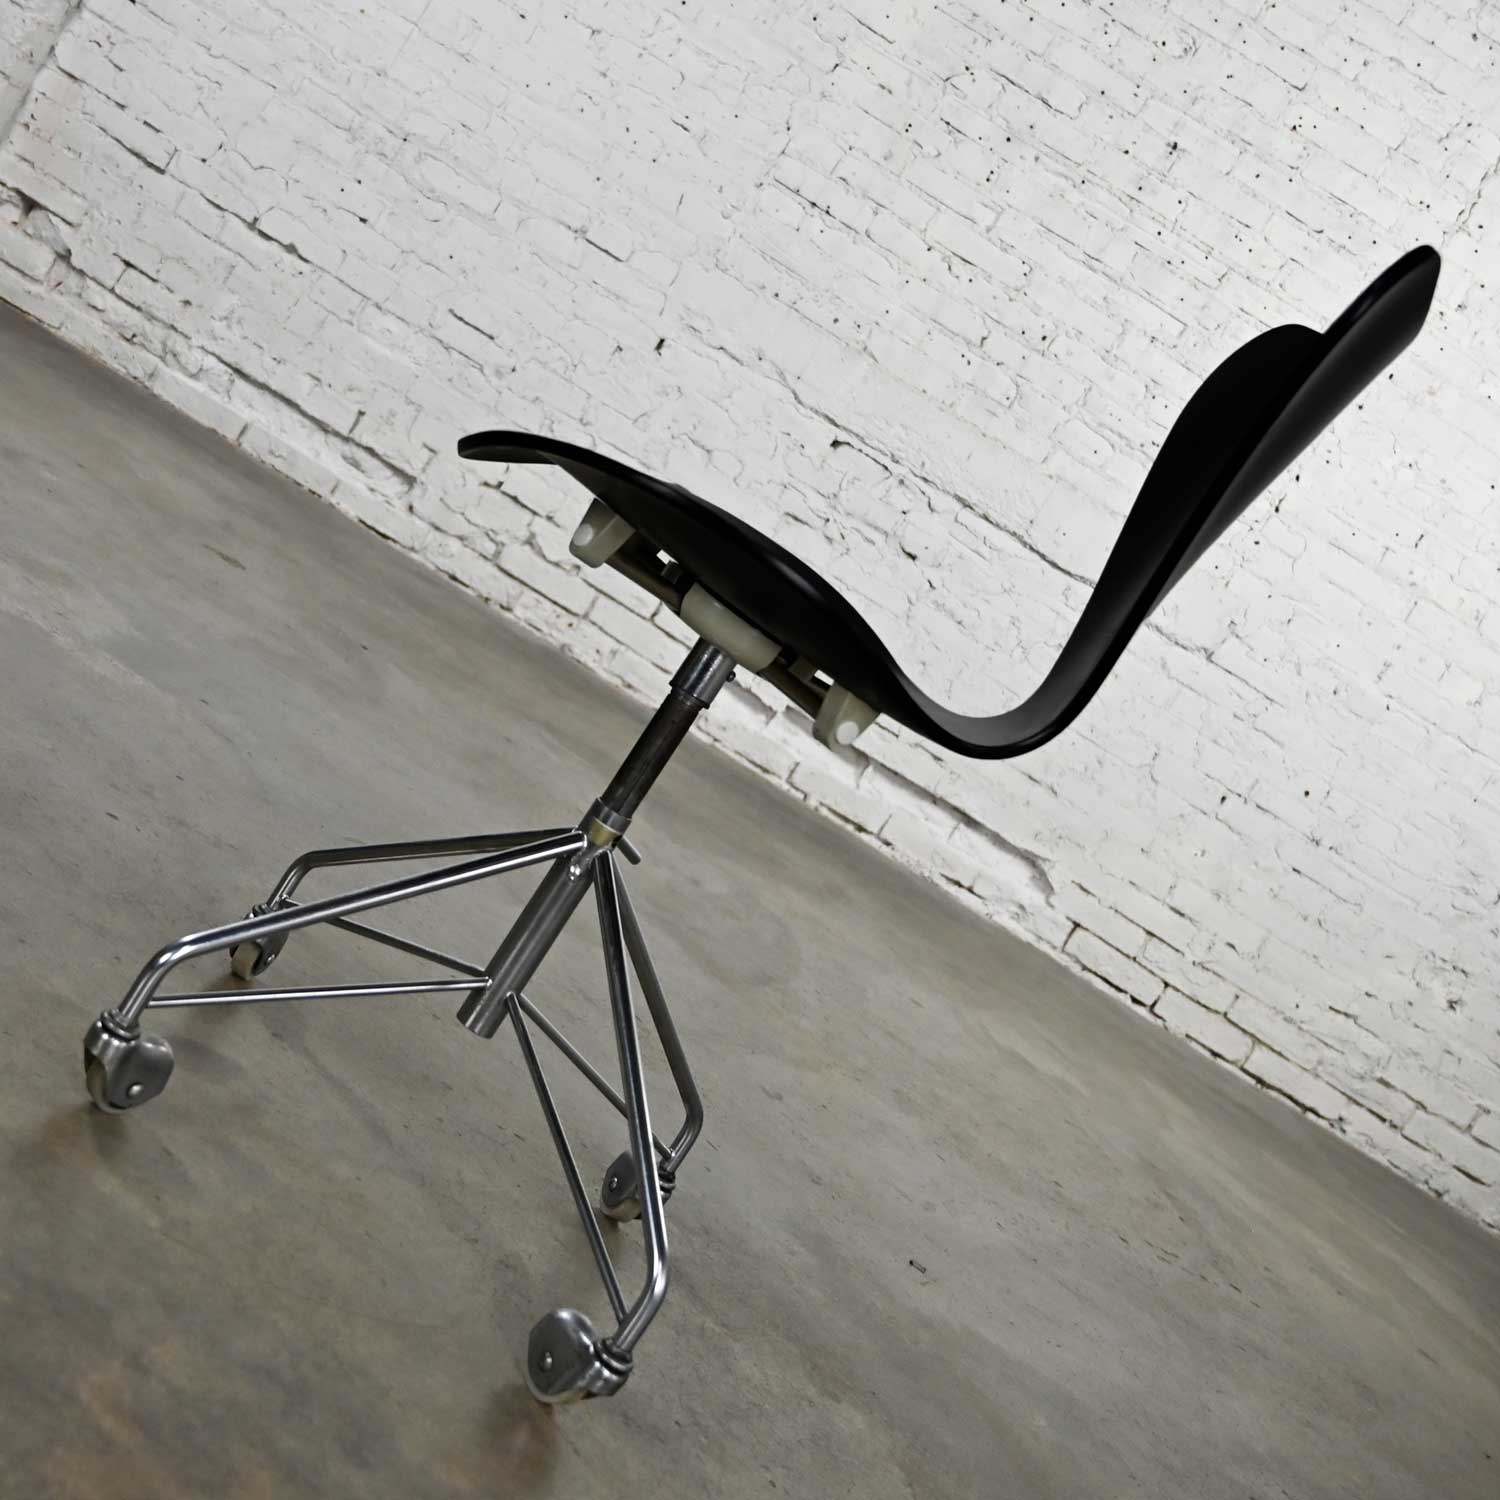 Scandinavian Modern Arne Jacobsen Series 7 Black & Chrome Office Chair by Fritz Hansen